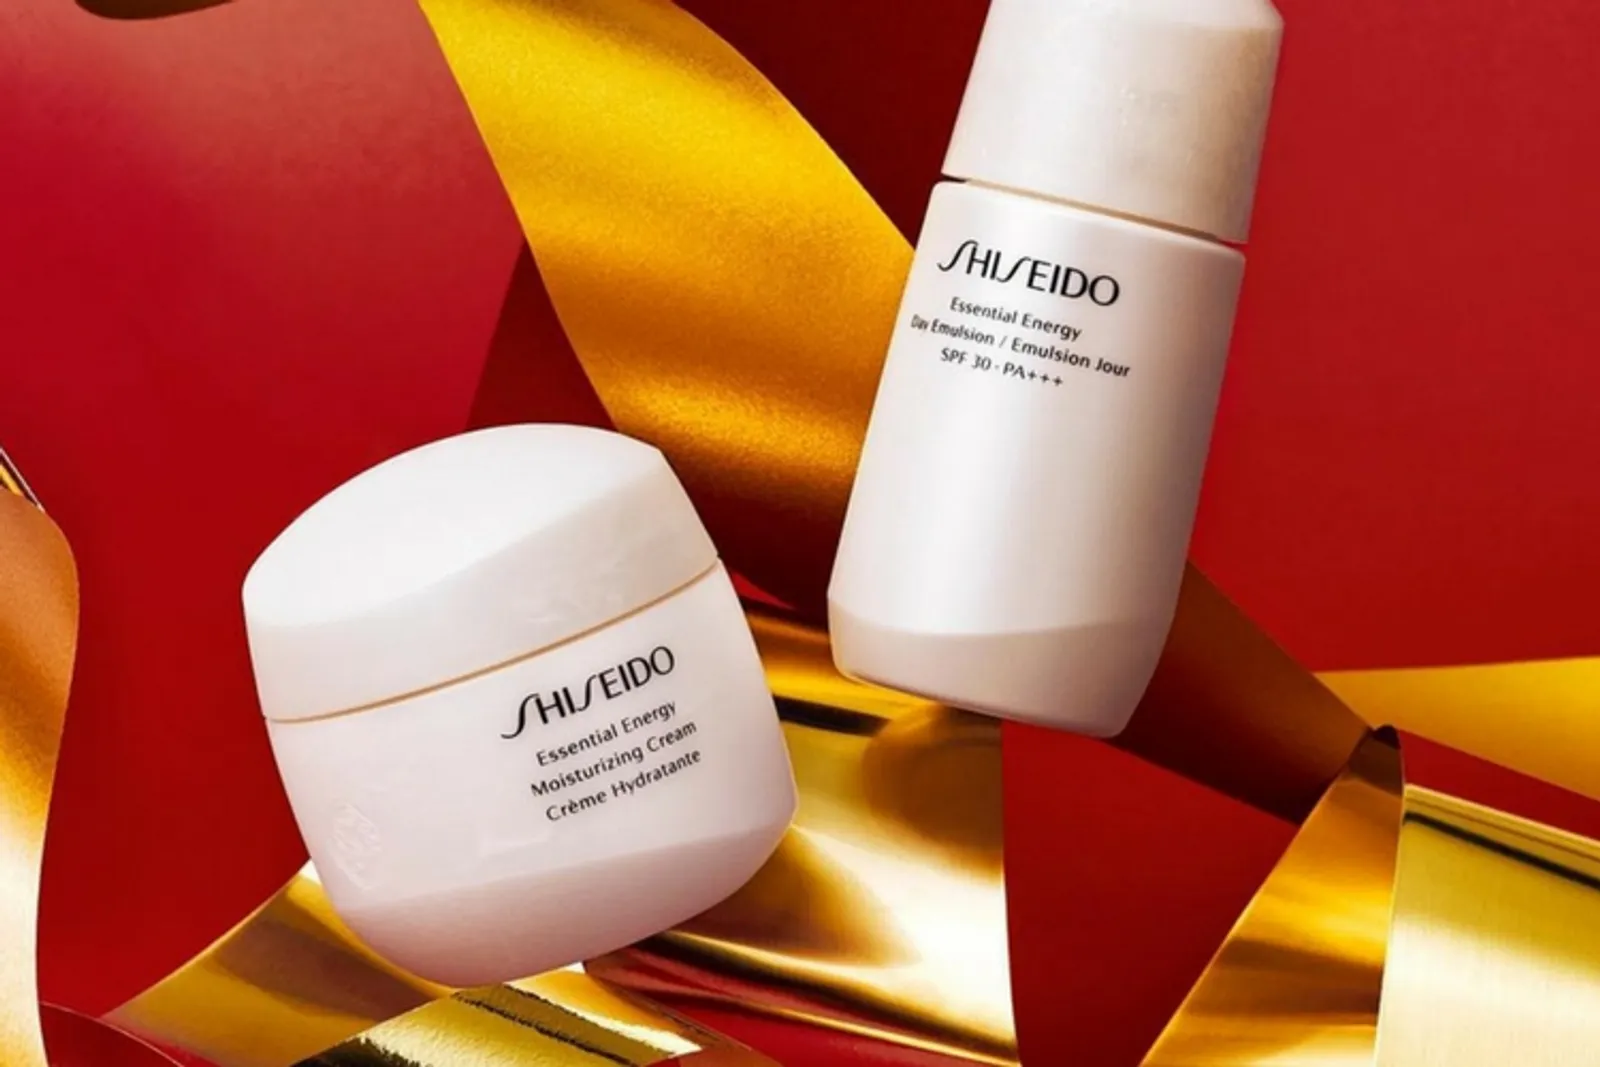 Shiseido Hadirkan Pelembap yang Bisa Membuat Skincare Bekerja Sempurna